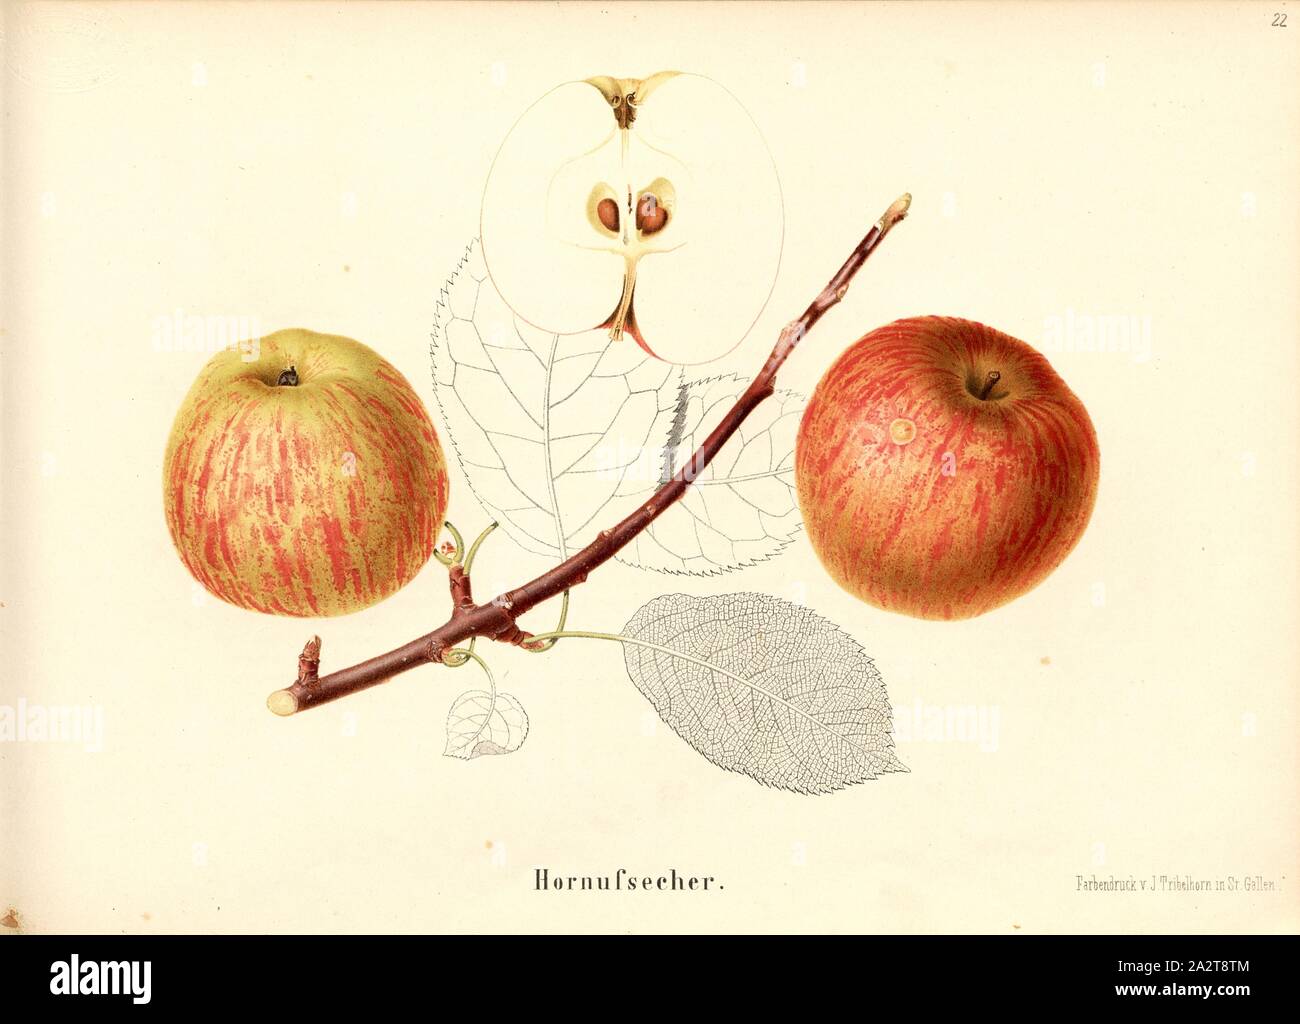 Hornufsecher, variété de pomme suisse, signé : couleur imprimer par J. Tribelhorn, fig. 21, Tribelhorn, J. (imp.), 1863, Schweizerisch. Landwirtschaftl. Verein (Hg.) : Schweizerische Obstsorten. [S.l.] : Schweizerischer Landwirtschaftlicher Verein, [1863 Banque D'Images